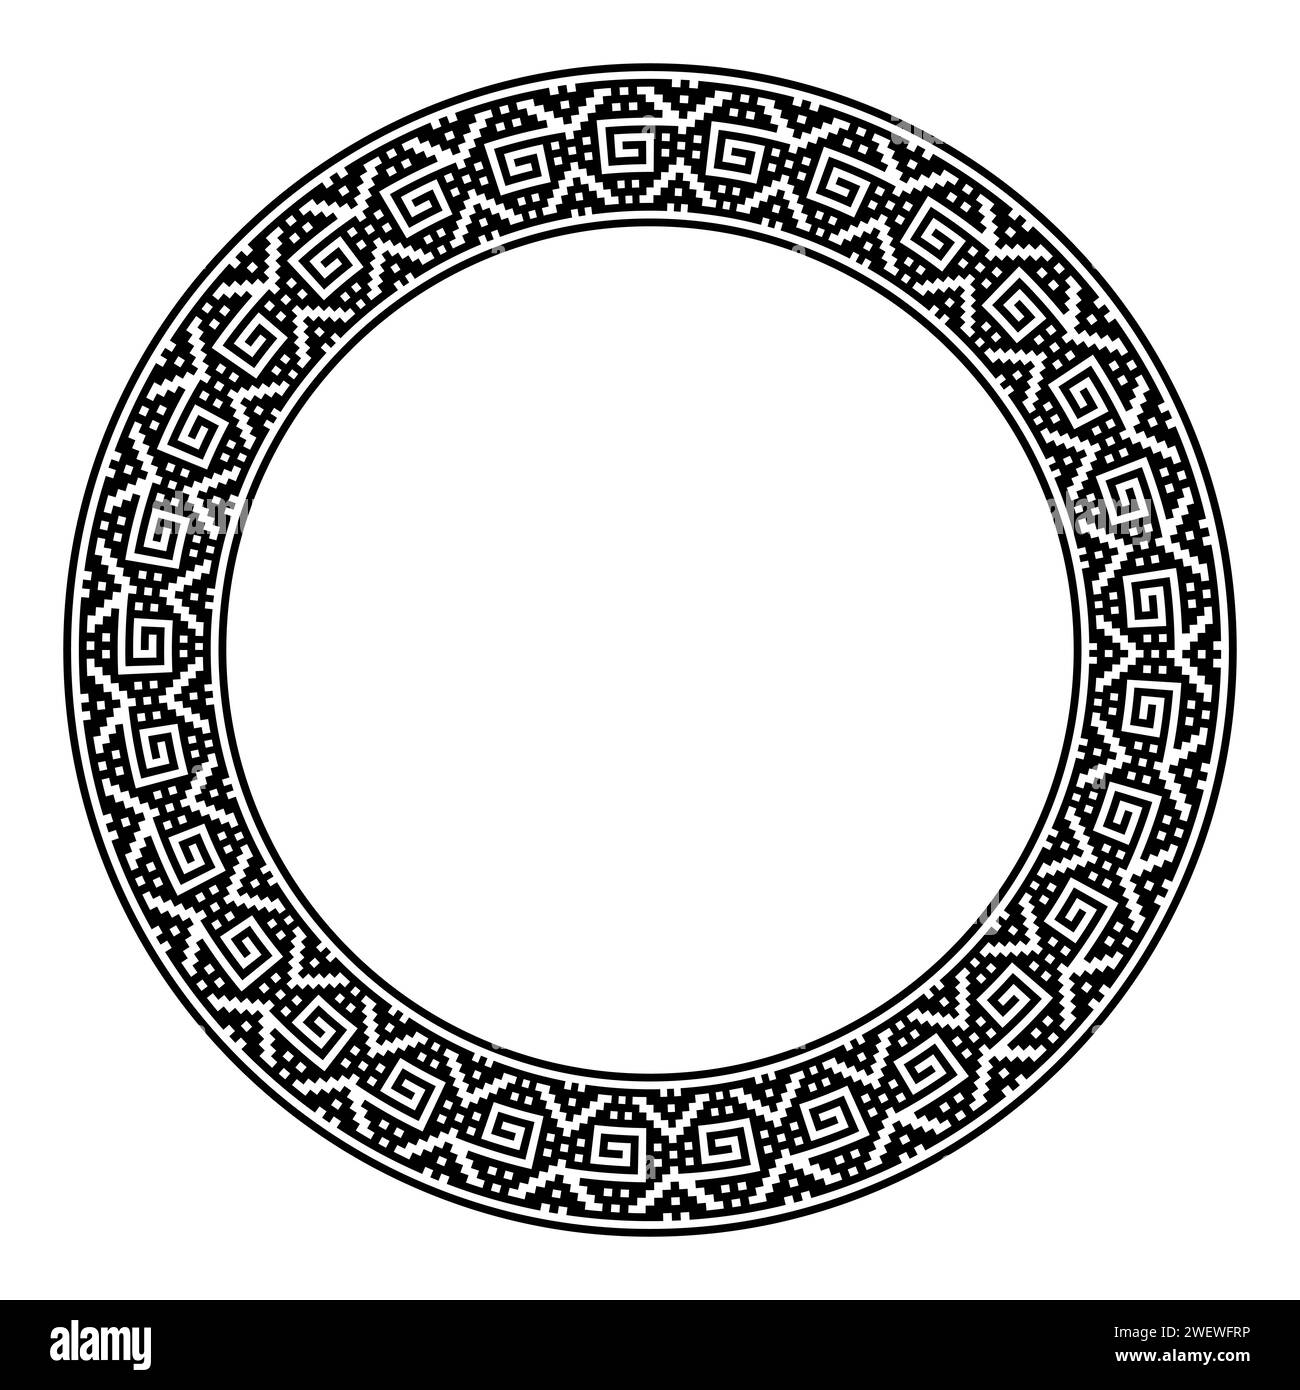 Motif spirale à gradins, cadre circulaire. Bordure circulaire décorative, dans le style Inca à gradins ancien avec des spirales angulaires. Illustration en noir et blanc. Banque D'Images